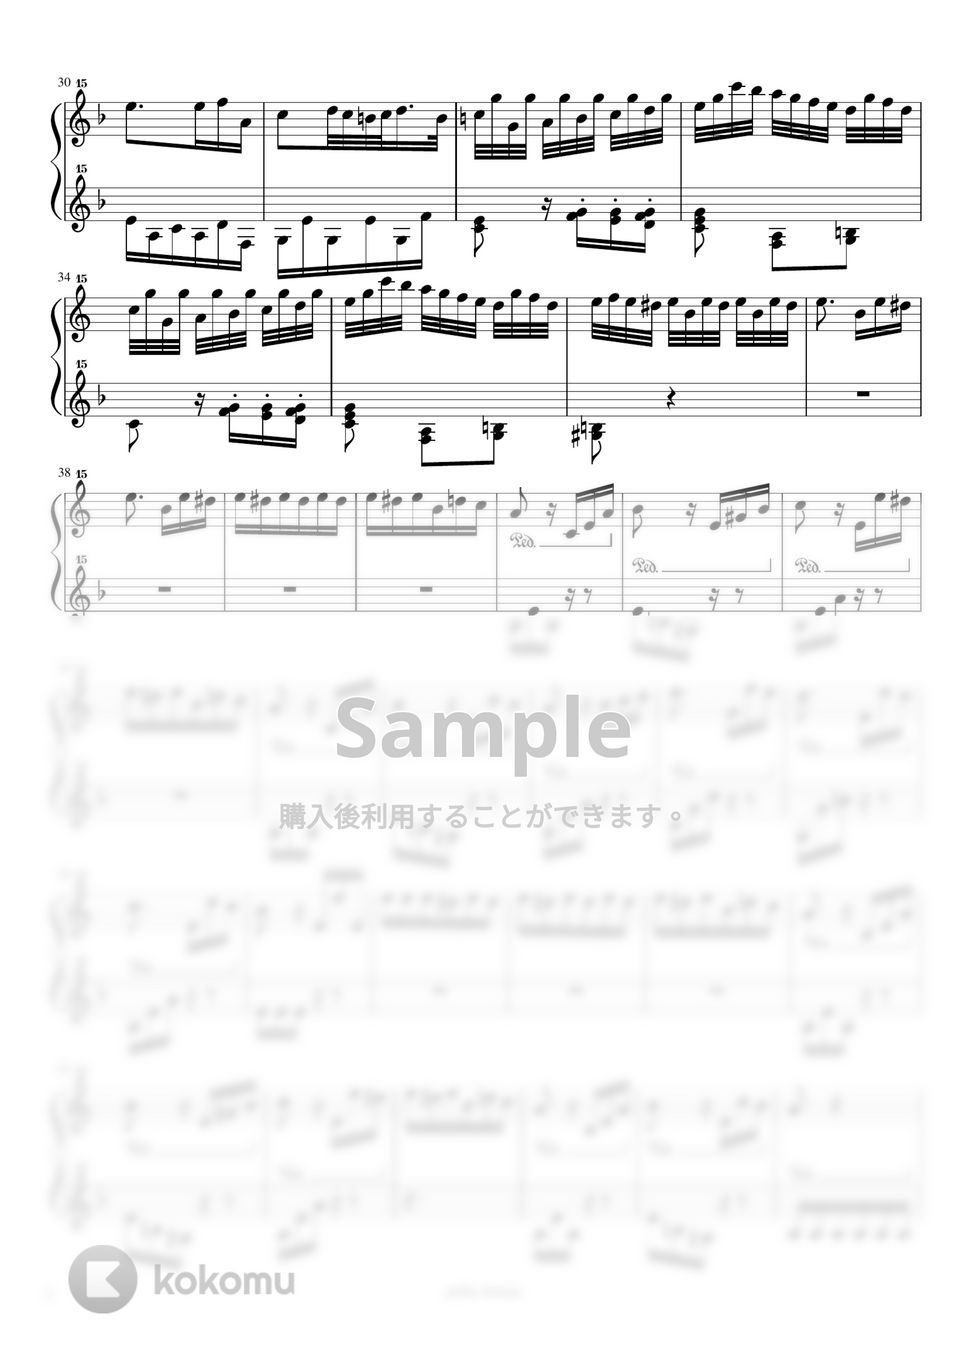 ベートーヴェン - エリーゼのために (トイピアノ / クラシック / 32鍵盤) by 川西三裕